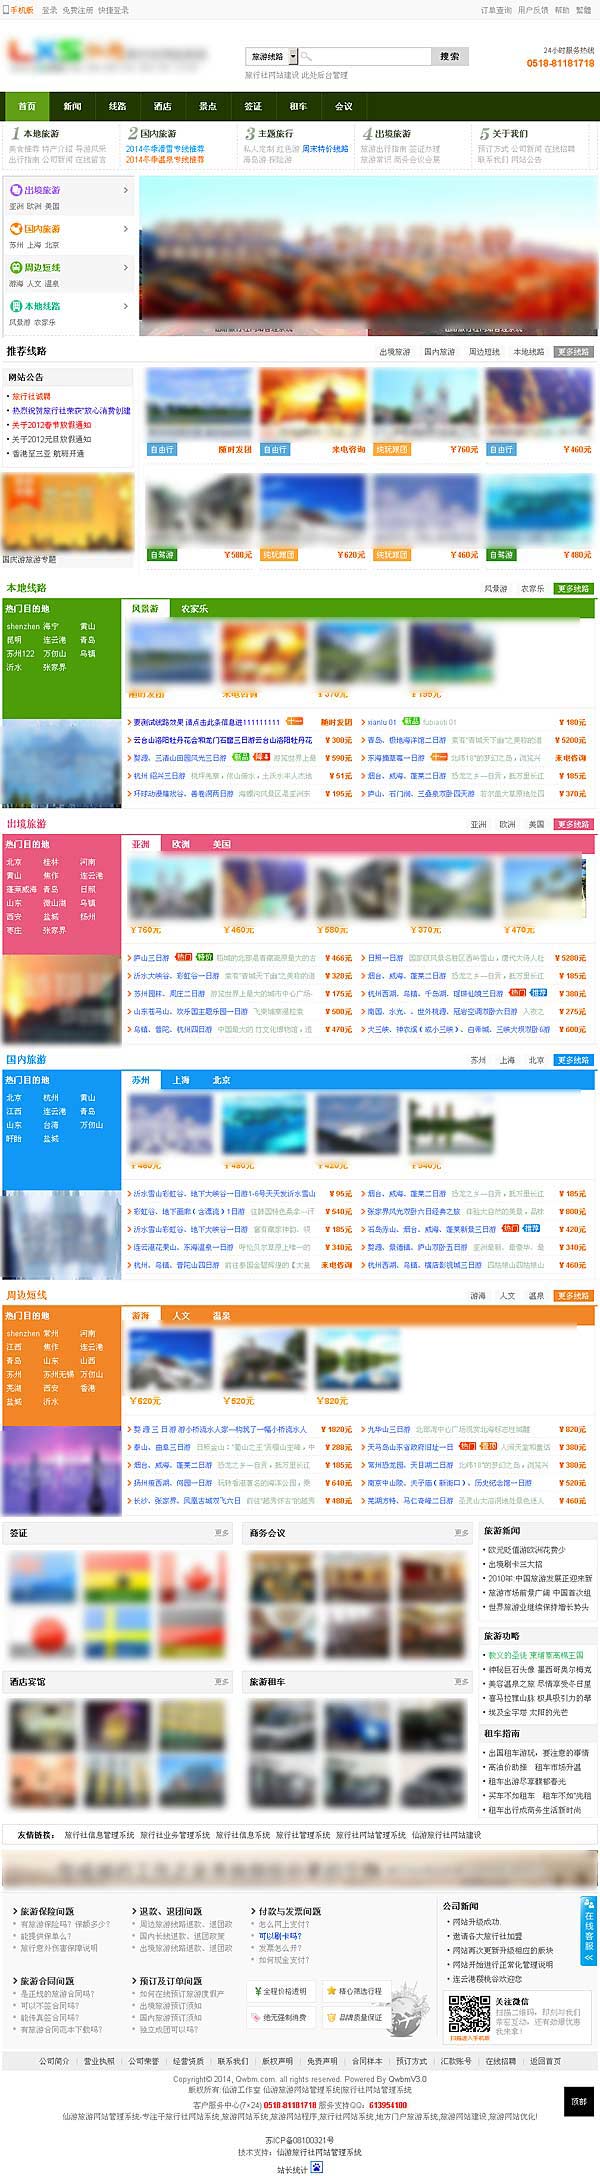 仙游旅行社网站系统体验